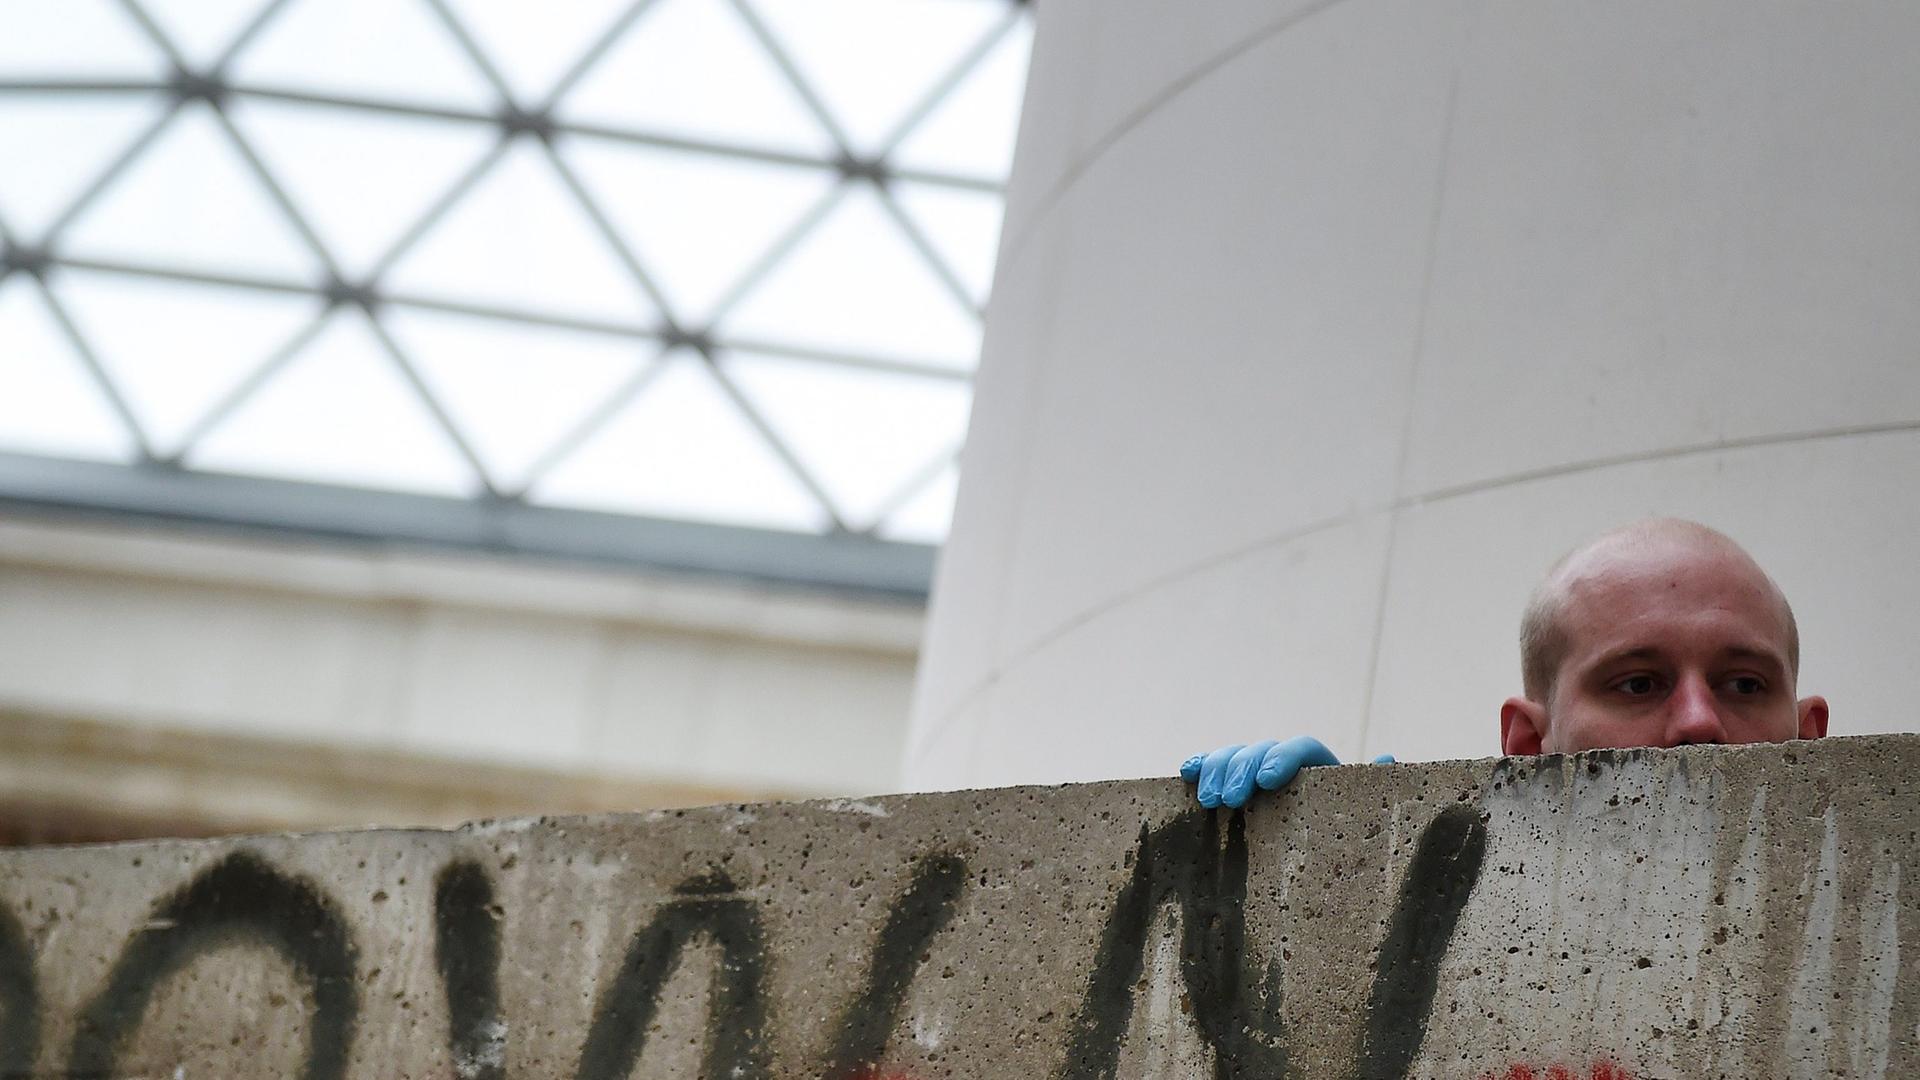 Ein Mitarbeiter des British Museum in London installiert am 13. Oktober 2014 ein Stück der Berliner Mauer als Teil der Ausstellung "Germany: memories of a nation".